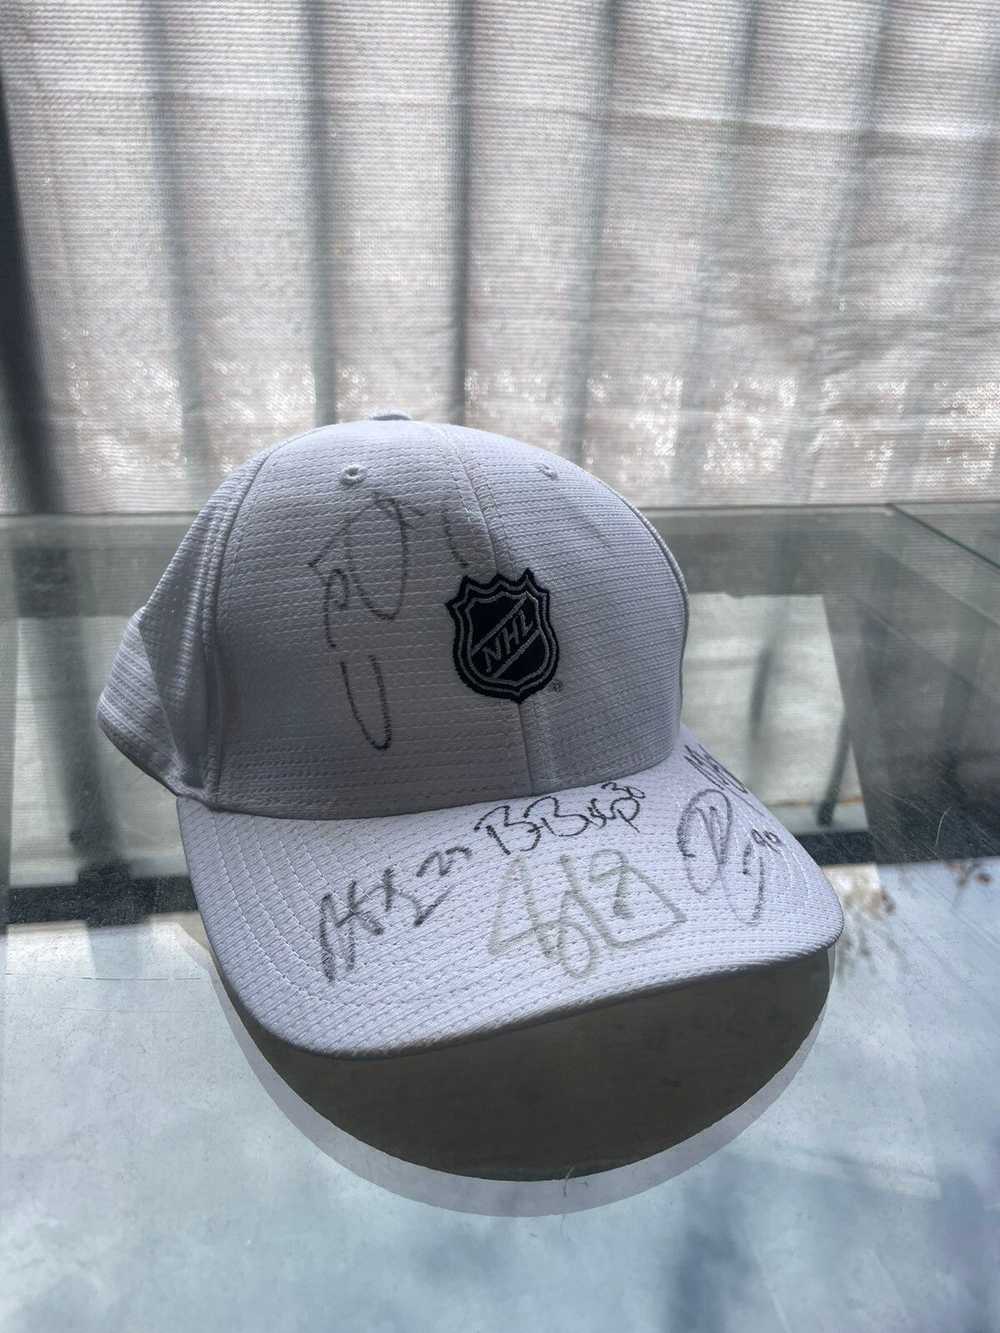 NHL × Rare × Vintage Rare Signed NHL Hat - image 1